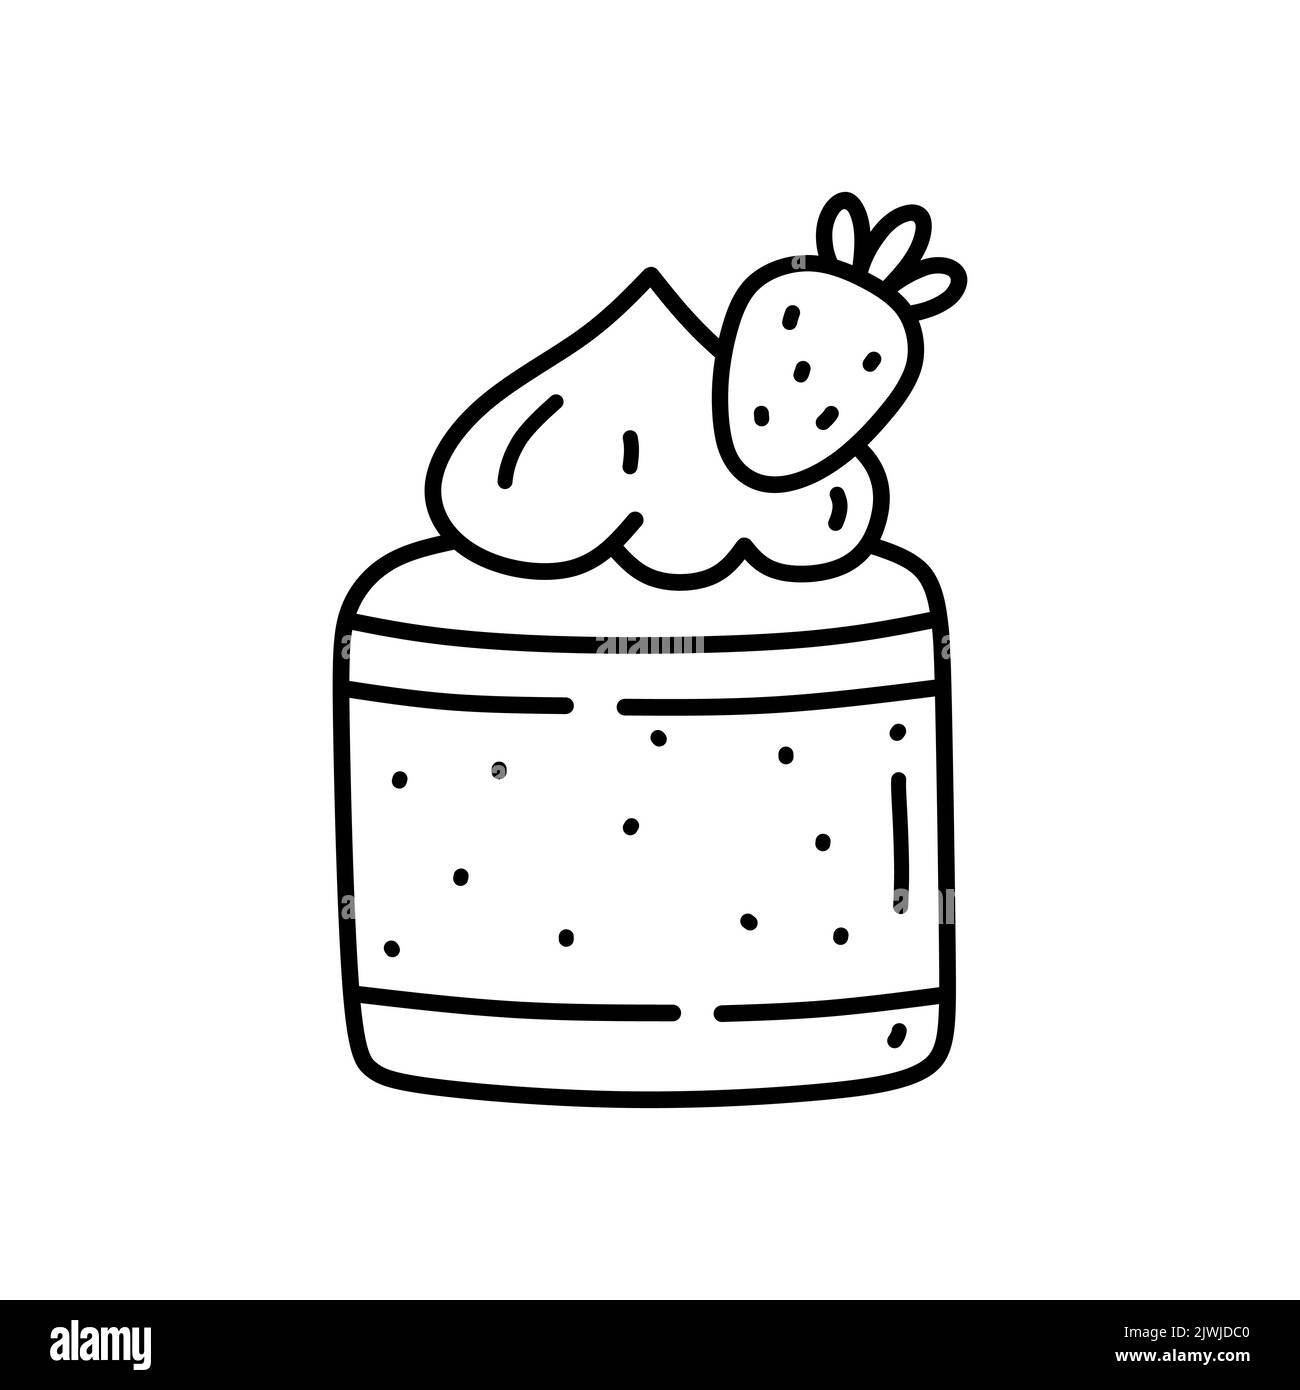 Pezzo di torta di fragole isolato su sfondo bianco. Dolce carino decorato con frutti di bosco. Illustrazione vettoriale disegnata a mano in stile doodle. Perfetto per Illustrazione Vettoriale